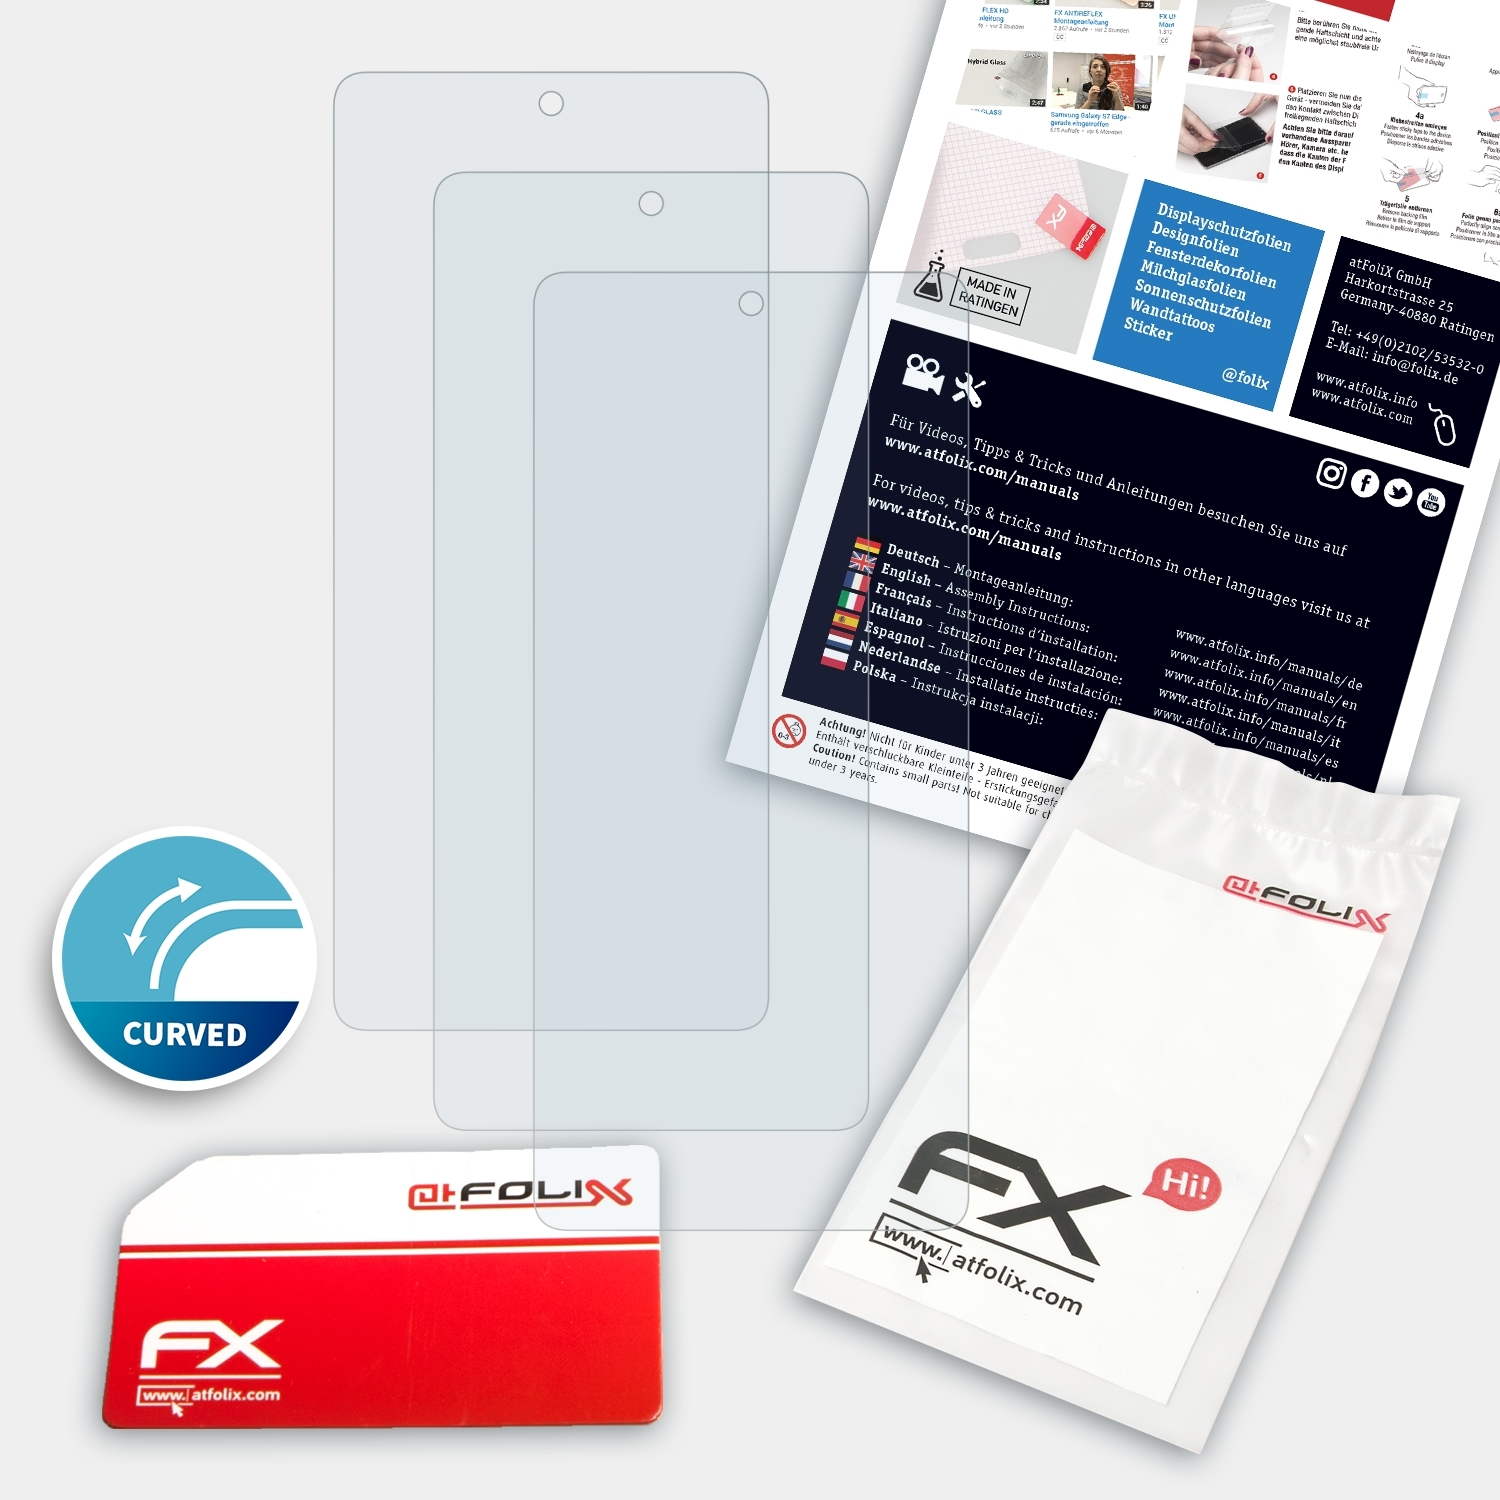 ATFOLIX 3x FX-ActiFleX Displayschutz(für Vivo iQOO Pro) 8